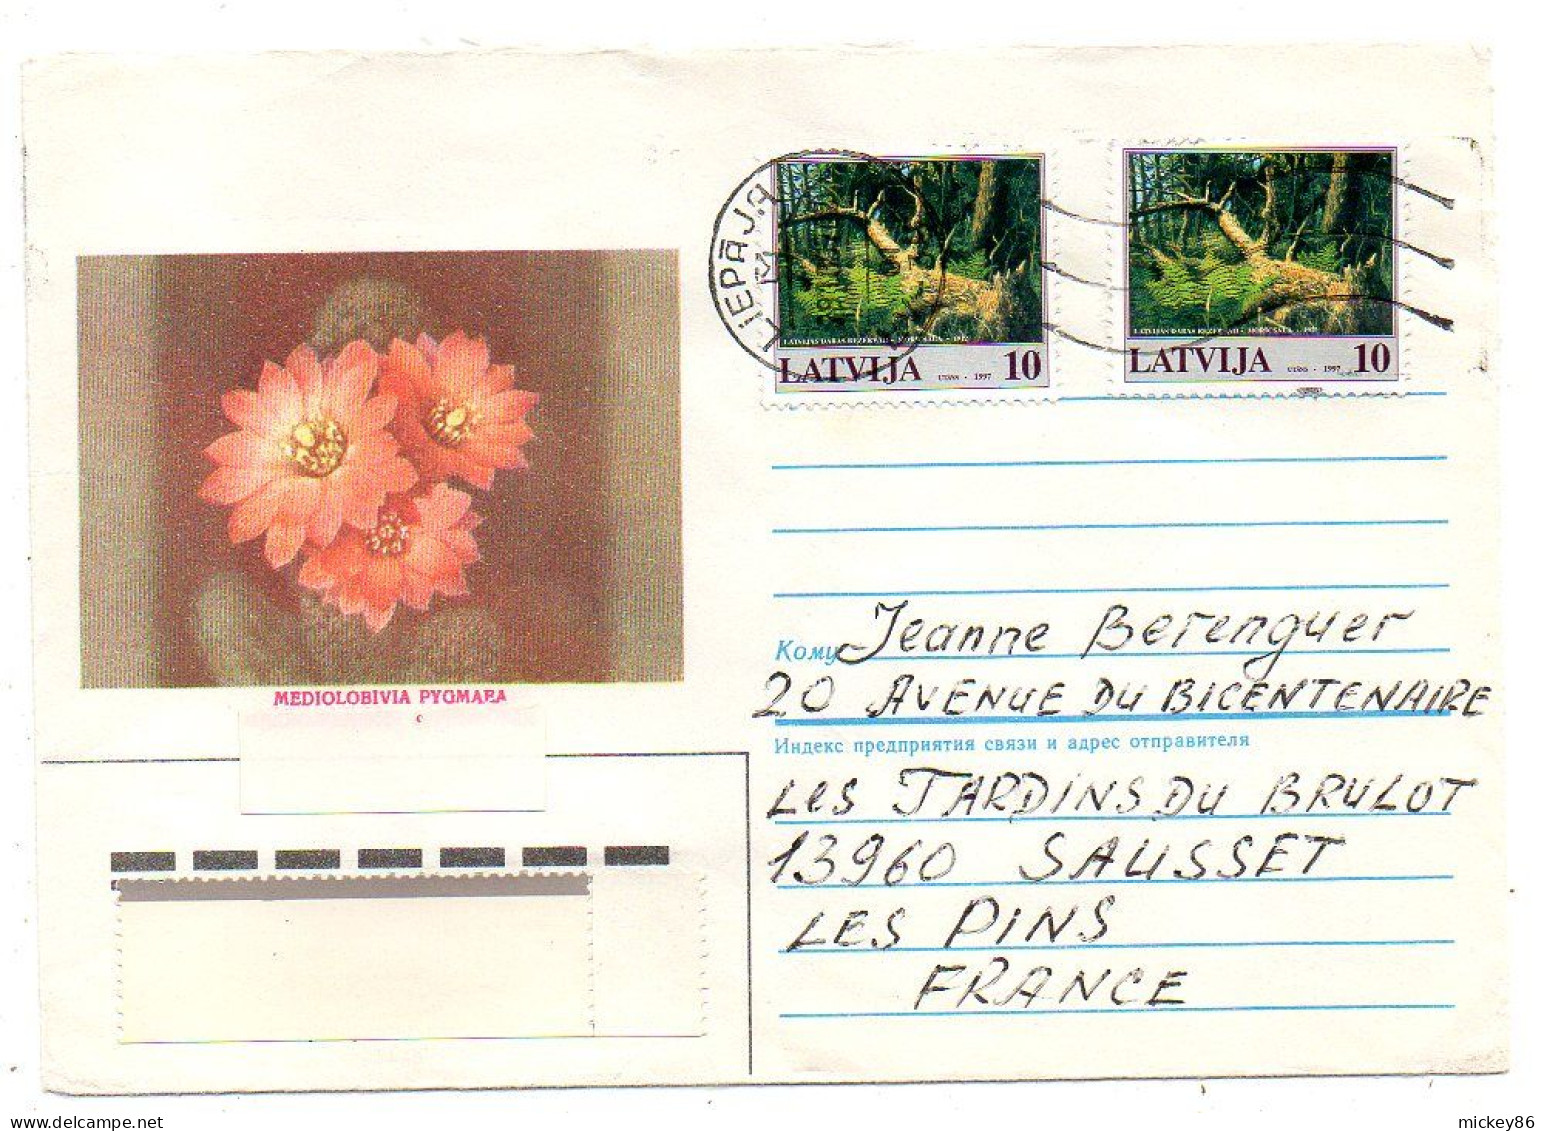 Lettonie -1997-- LIEPAJA  Pour SAUSSET LES BAINS-13 (France)..timbres ( Animaux ,fleur )......cachet - Latvia